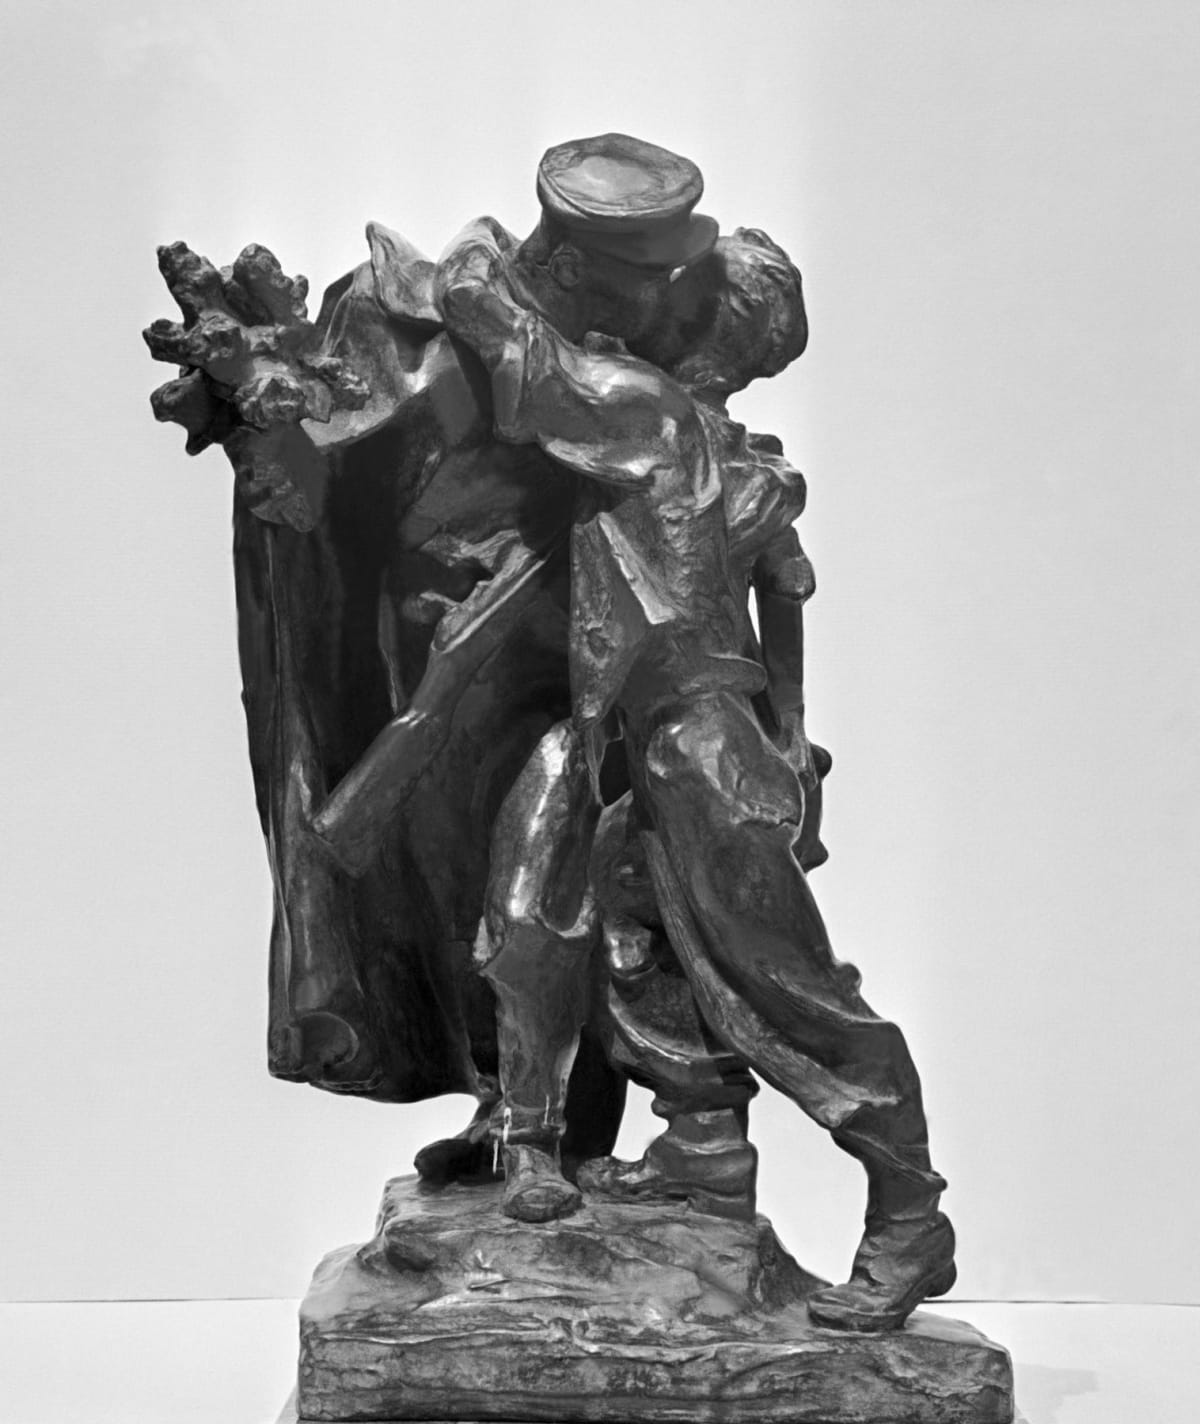 Socha Sbratření od Karla Pokorného, která zobrazuje líbajícího se barikádníka s rudoarmějcem.